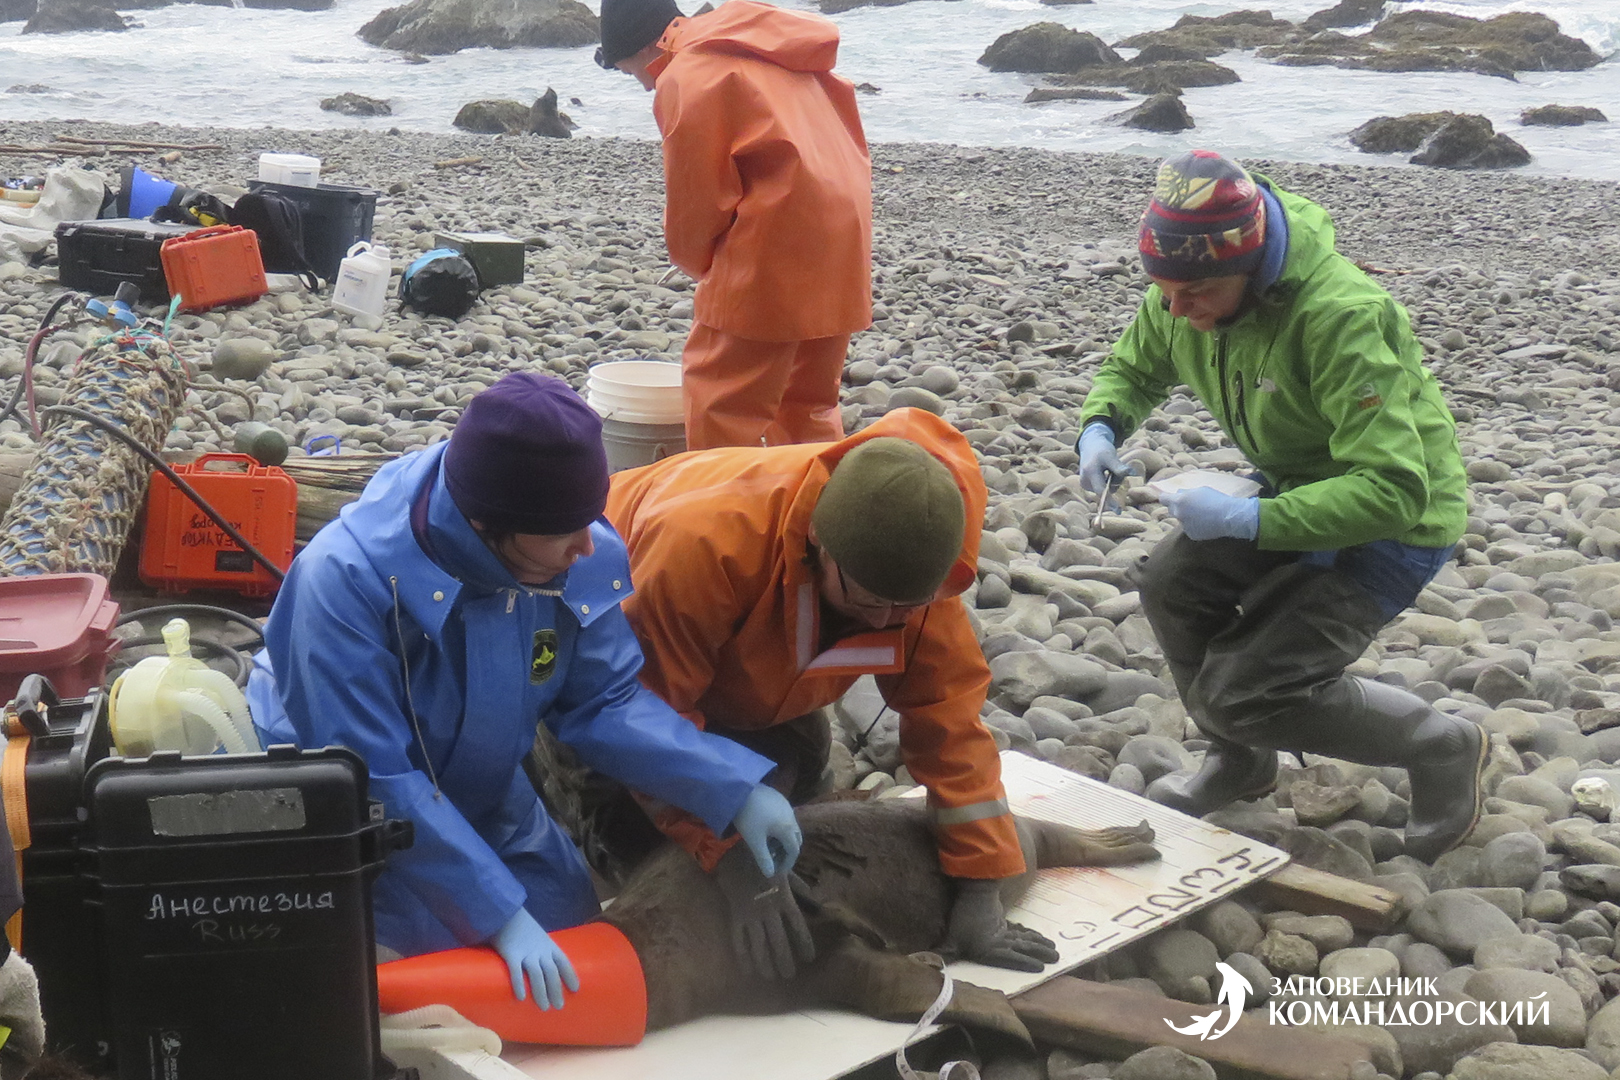 Подготовка северного морского льва к таврению с применением газовой анестезии